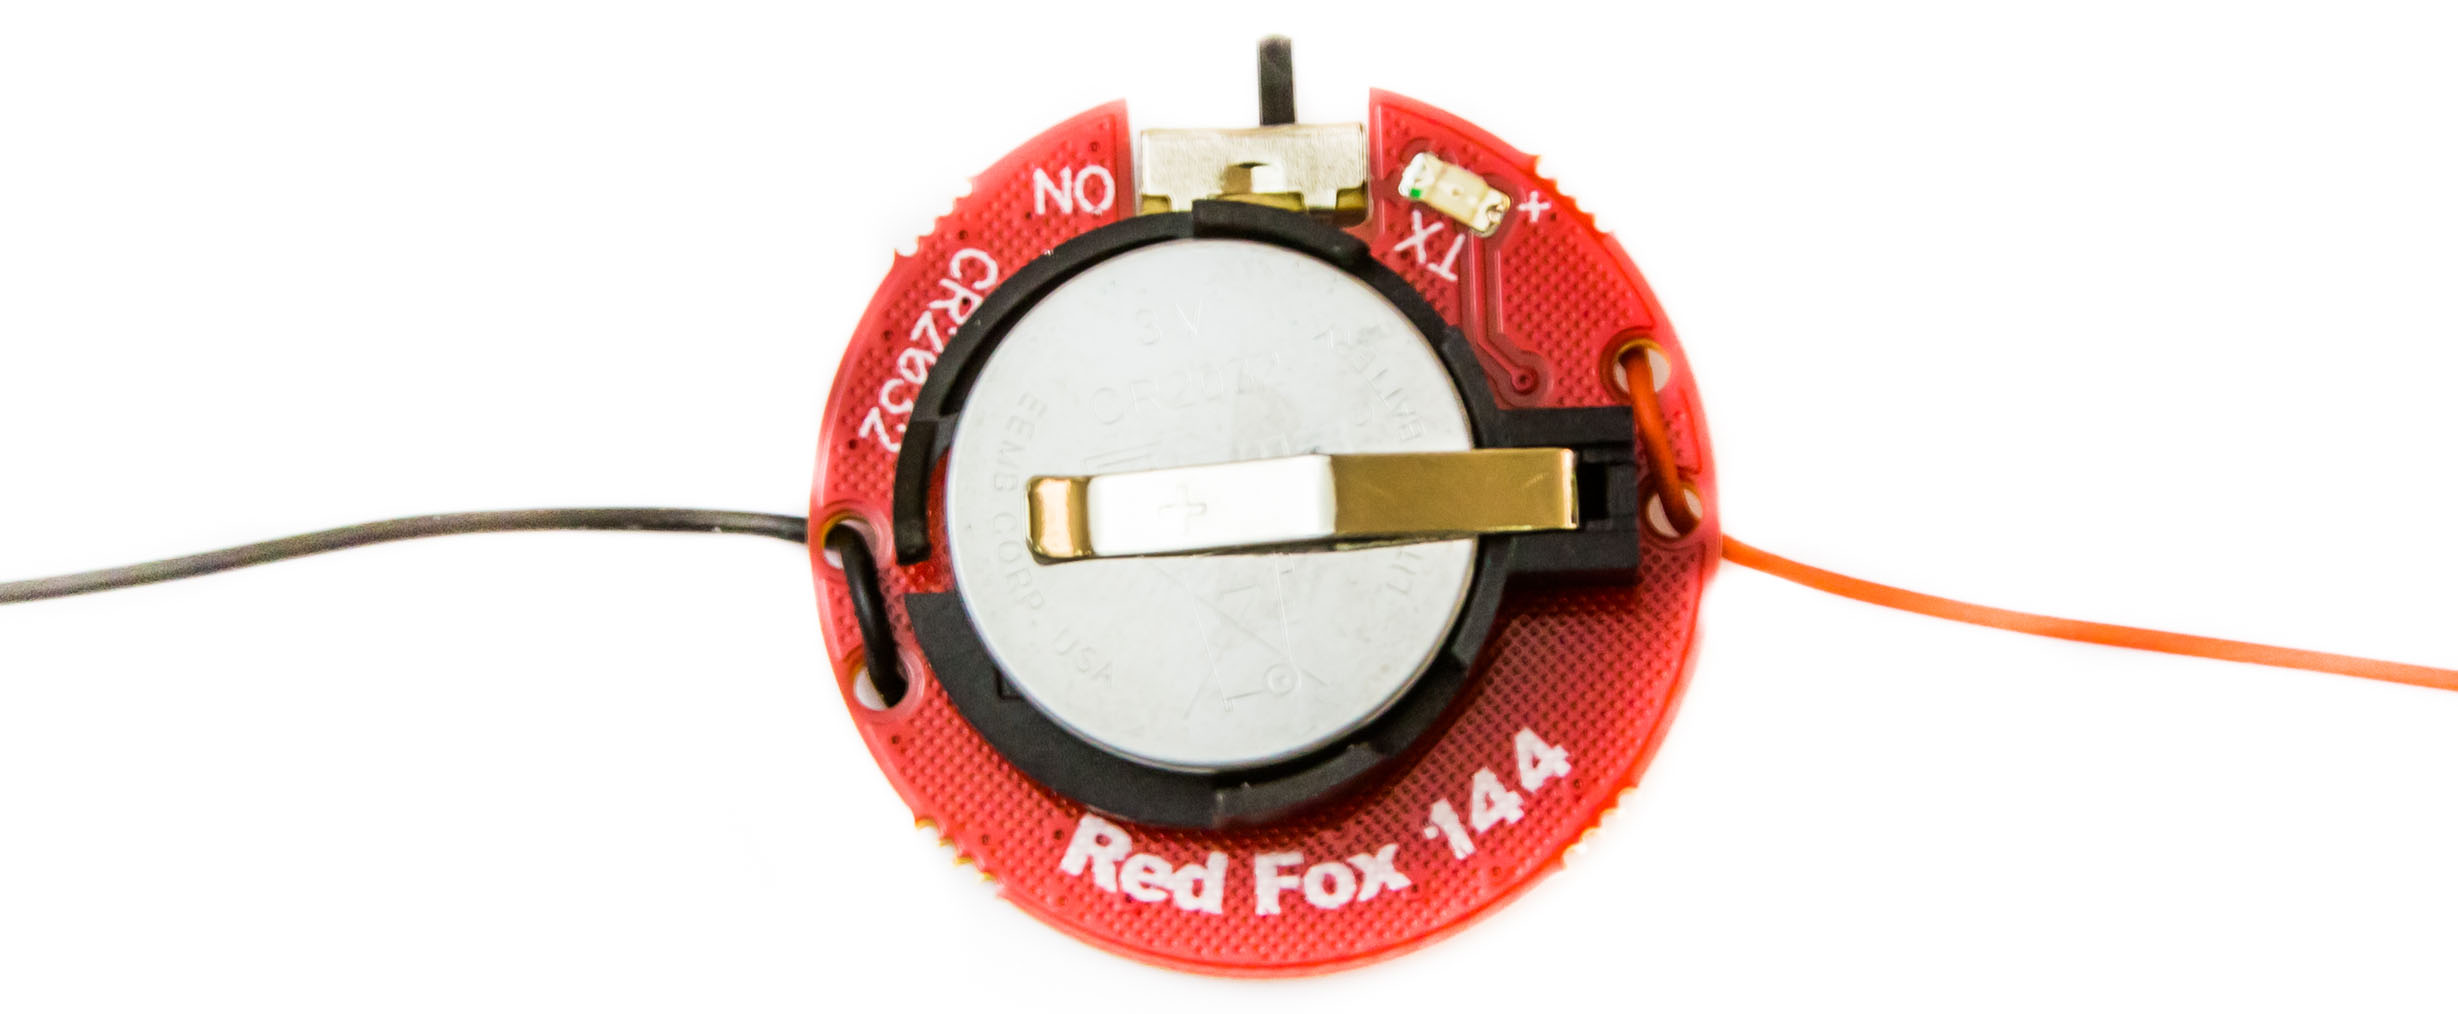 Rigexpert RedFox 144 - mikronadajnik do łowy na lisa, ARDF